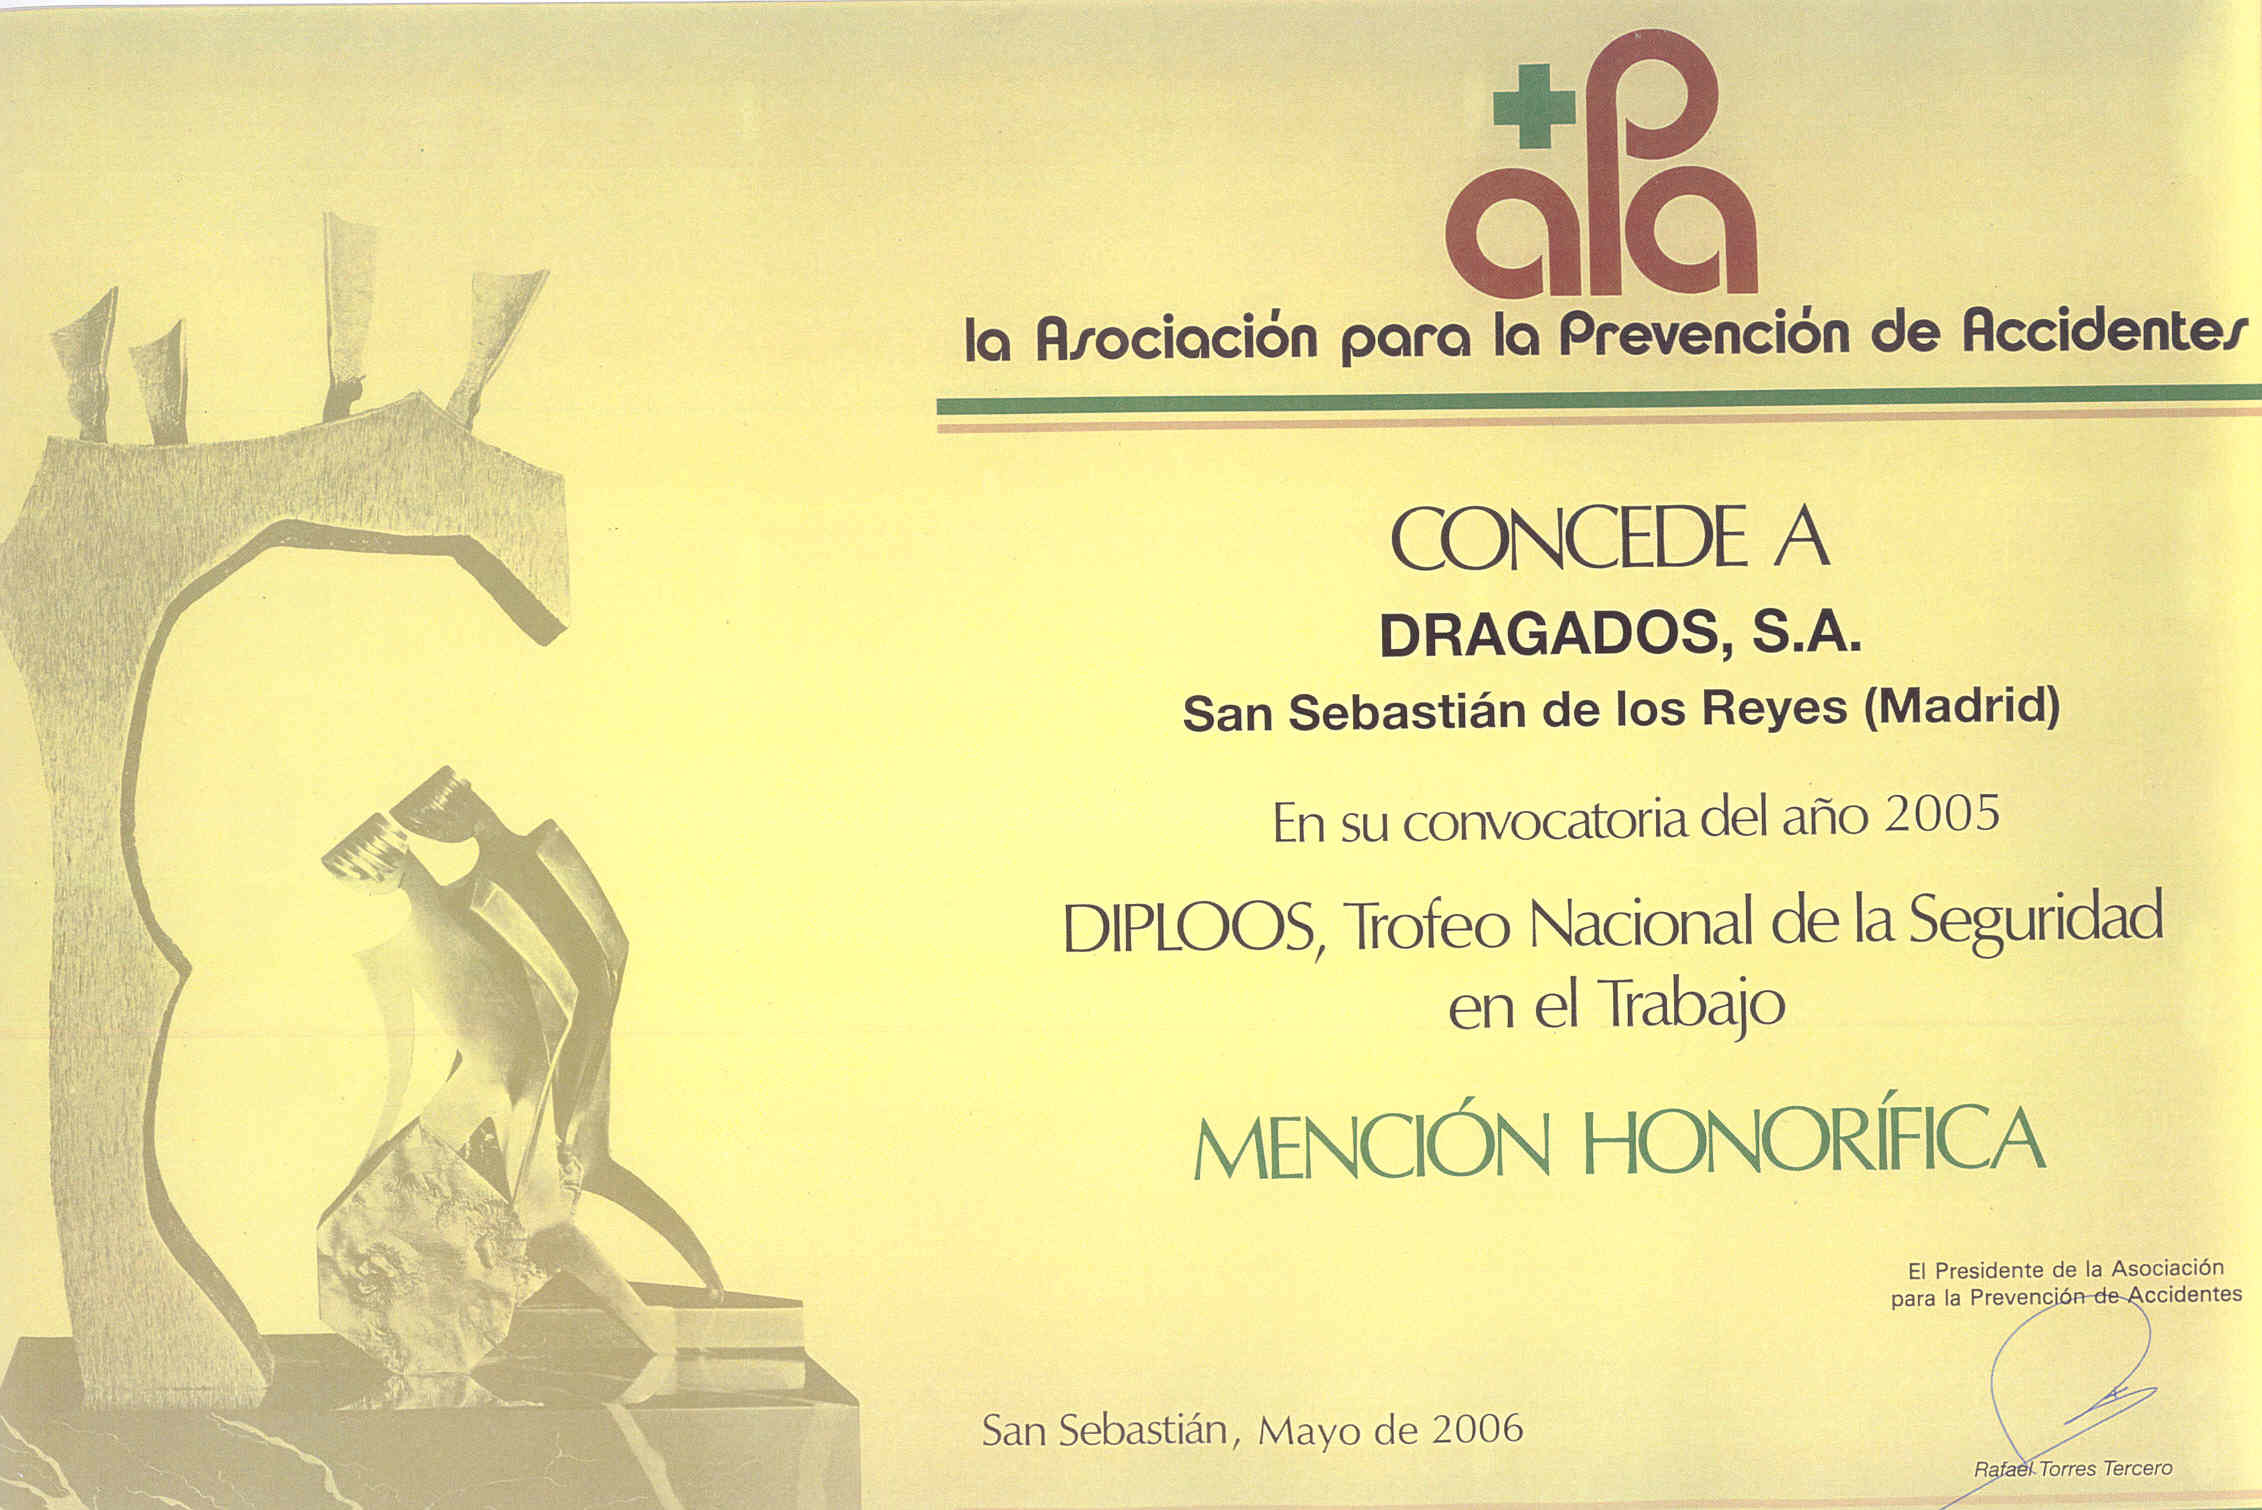 Diploma correspondiente al Trofeo Nacional de la Seguridad en el trabajo DIPLOOS